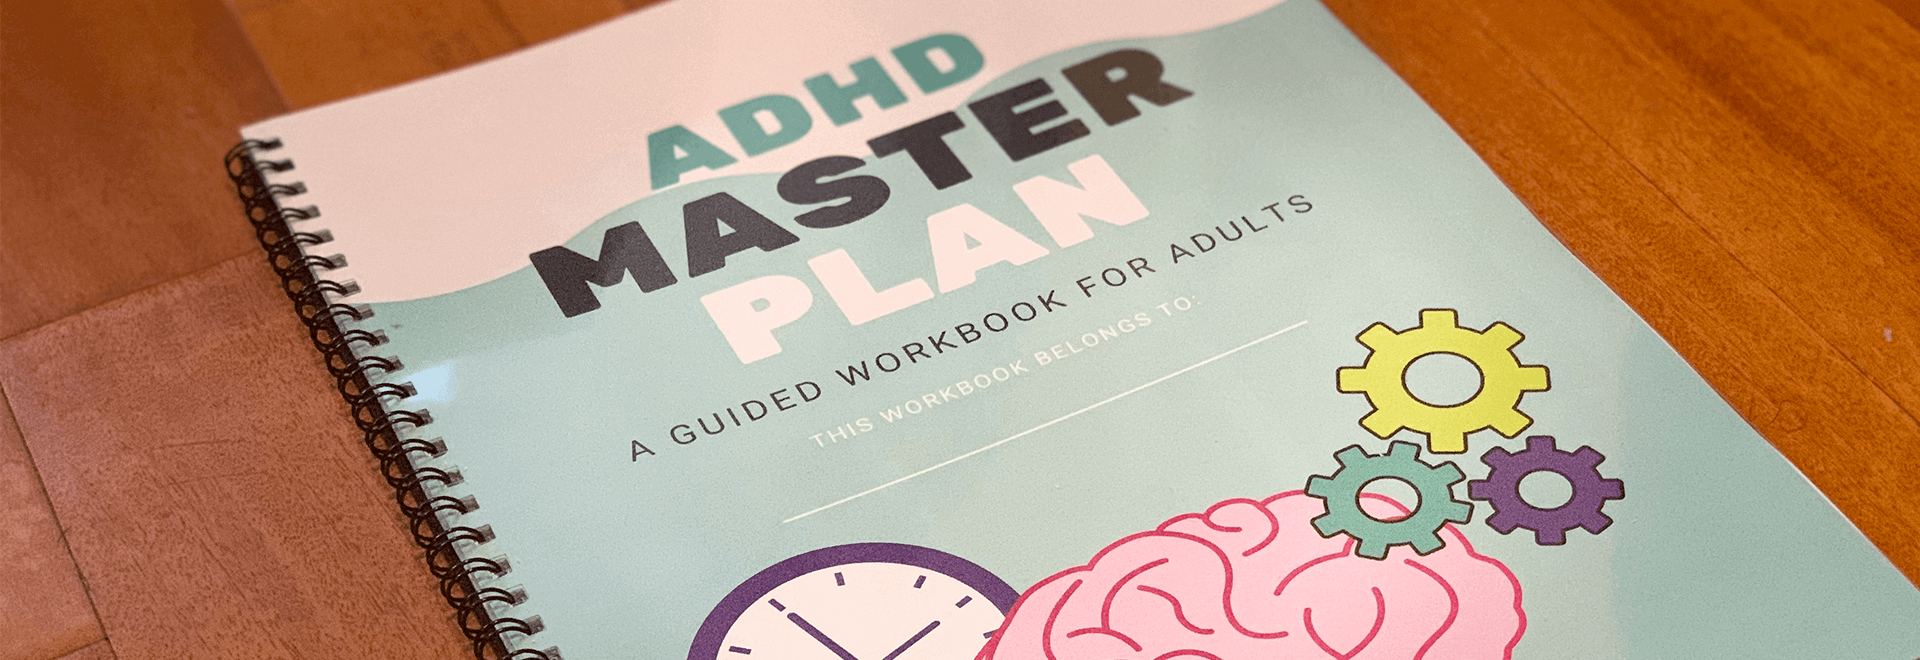 ADHDMasterPlan_header